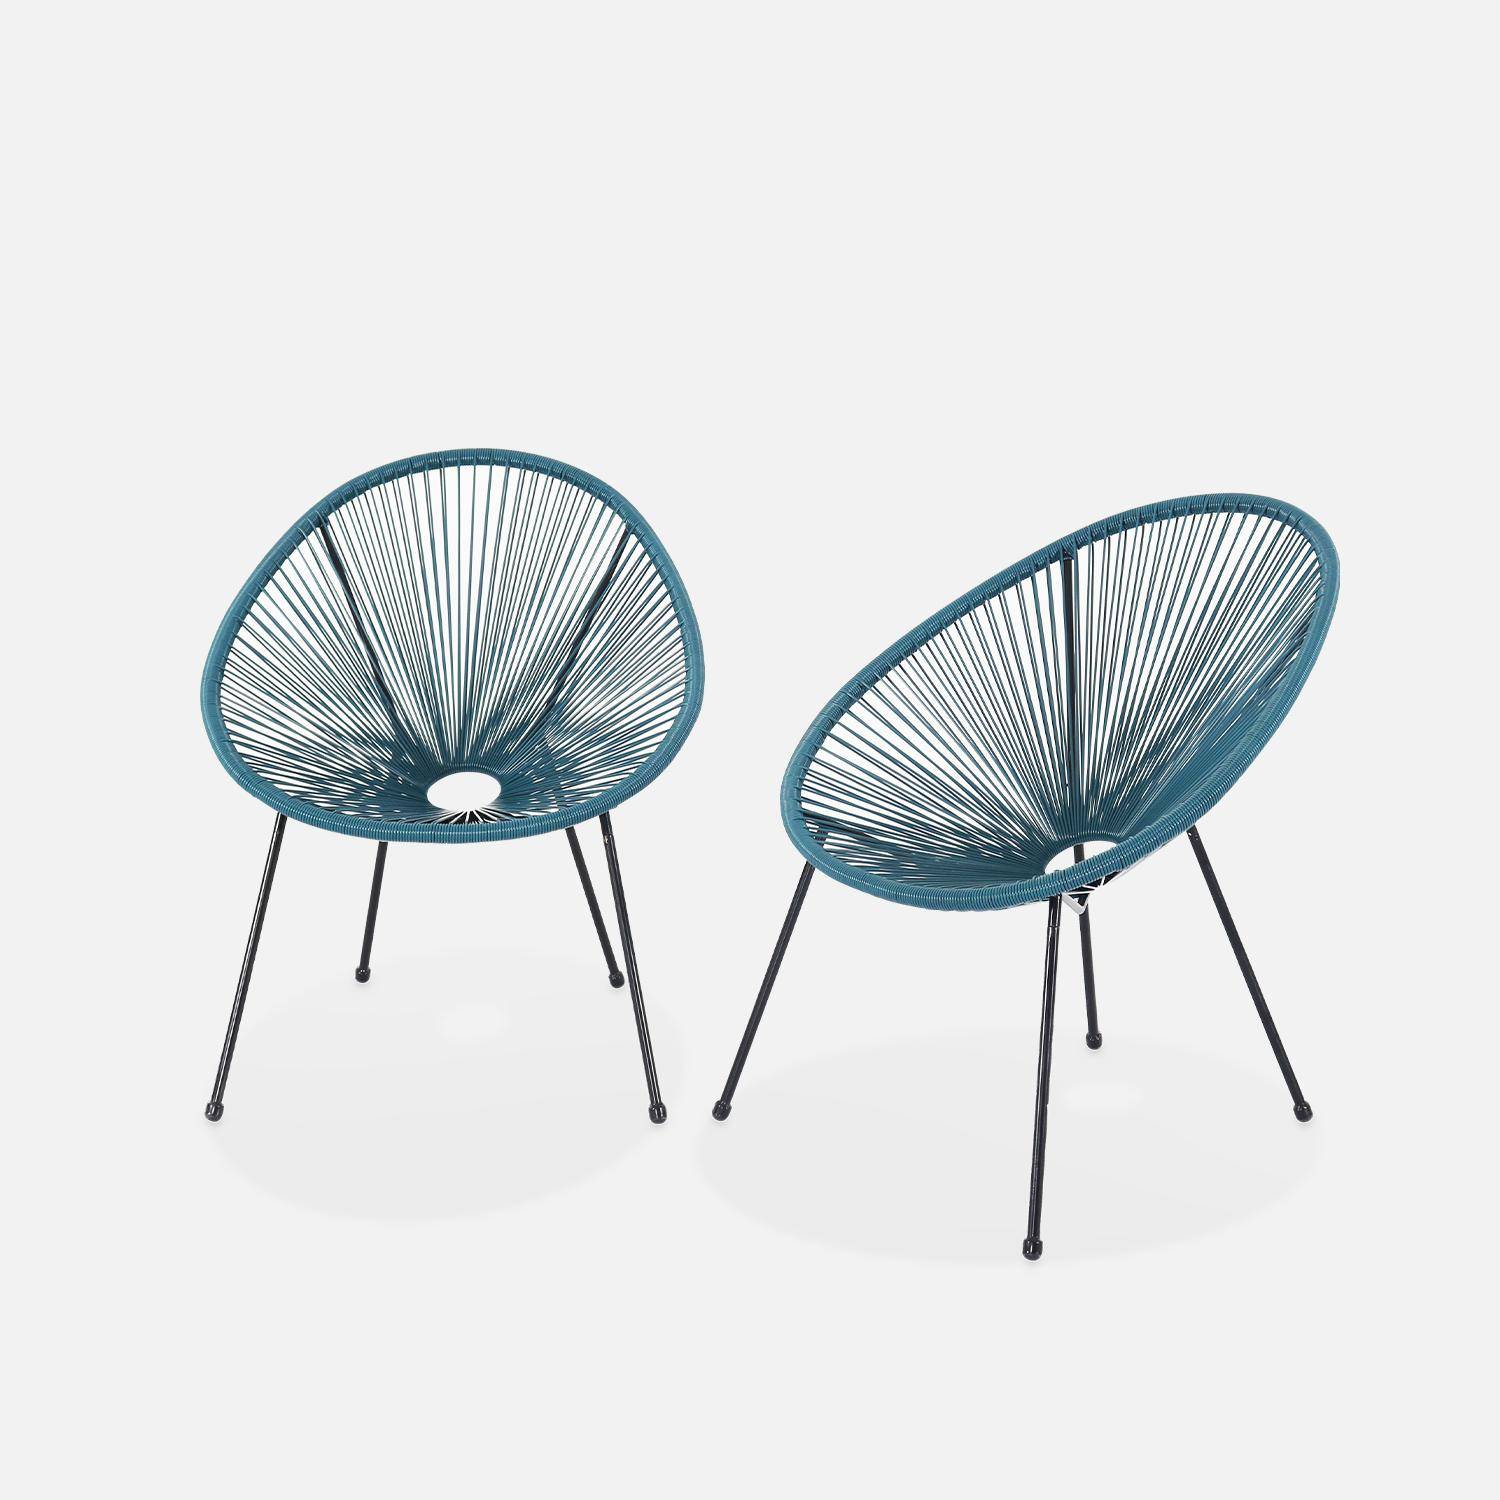 Lot de 2 fauteuils design Oeuf - Acapulco bleu canard - Fauteuils 4 pieds design rétro, cordage plastique, intérieur / extérieur Photo2